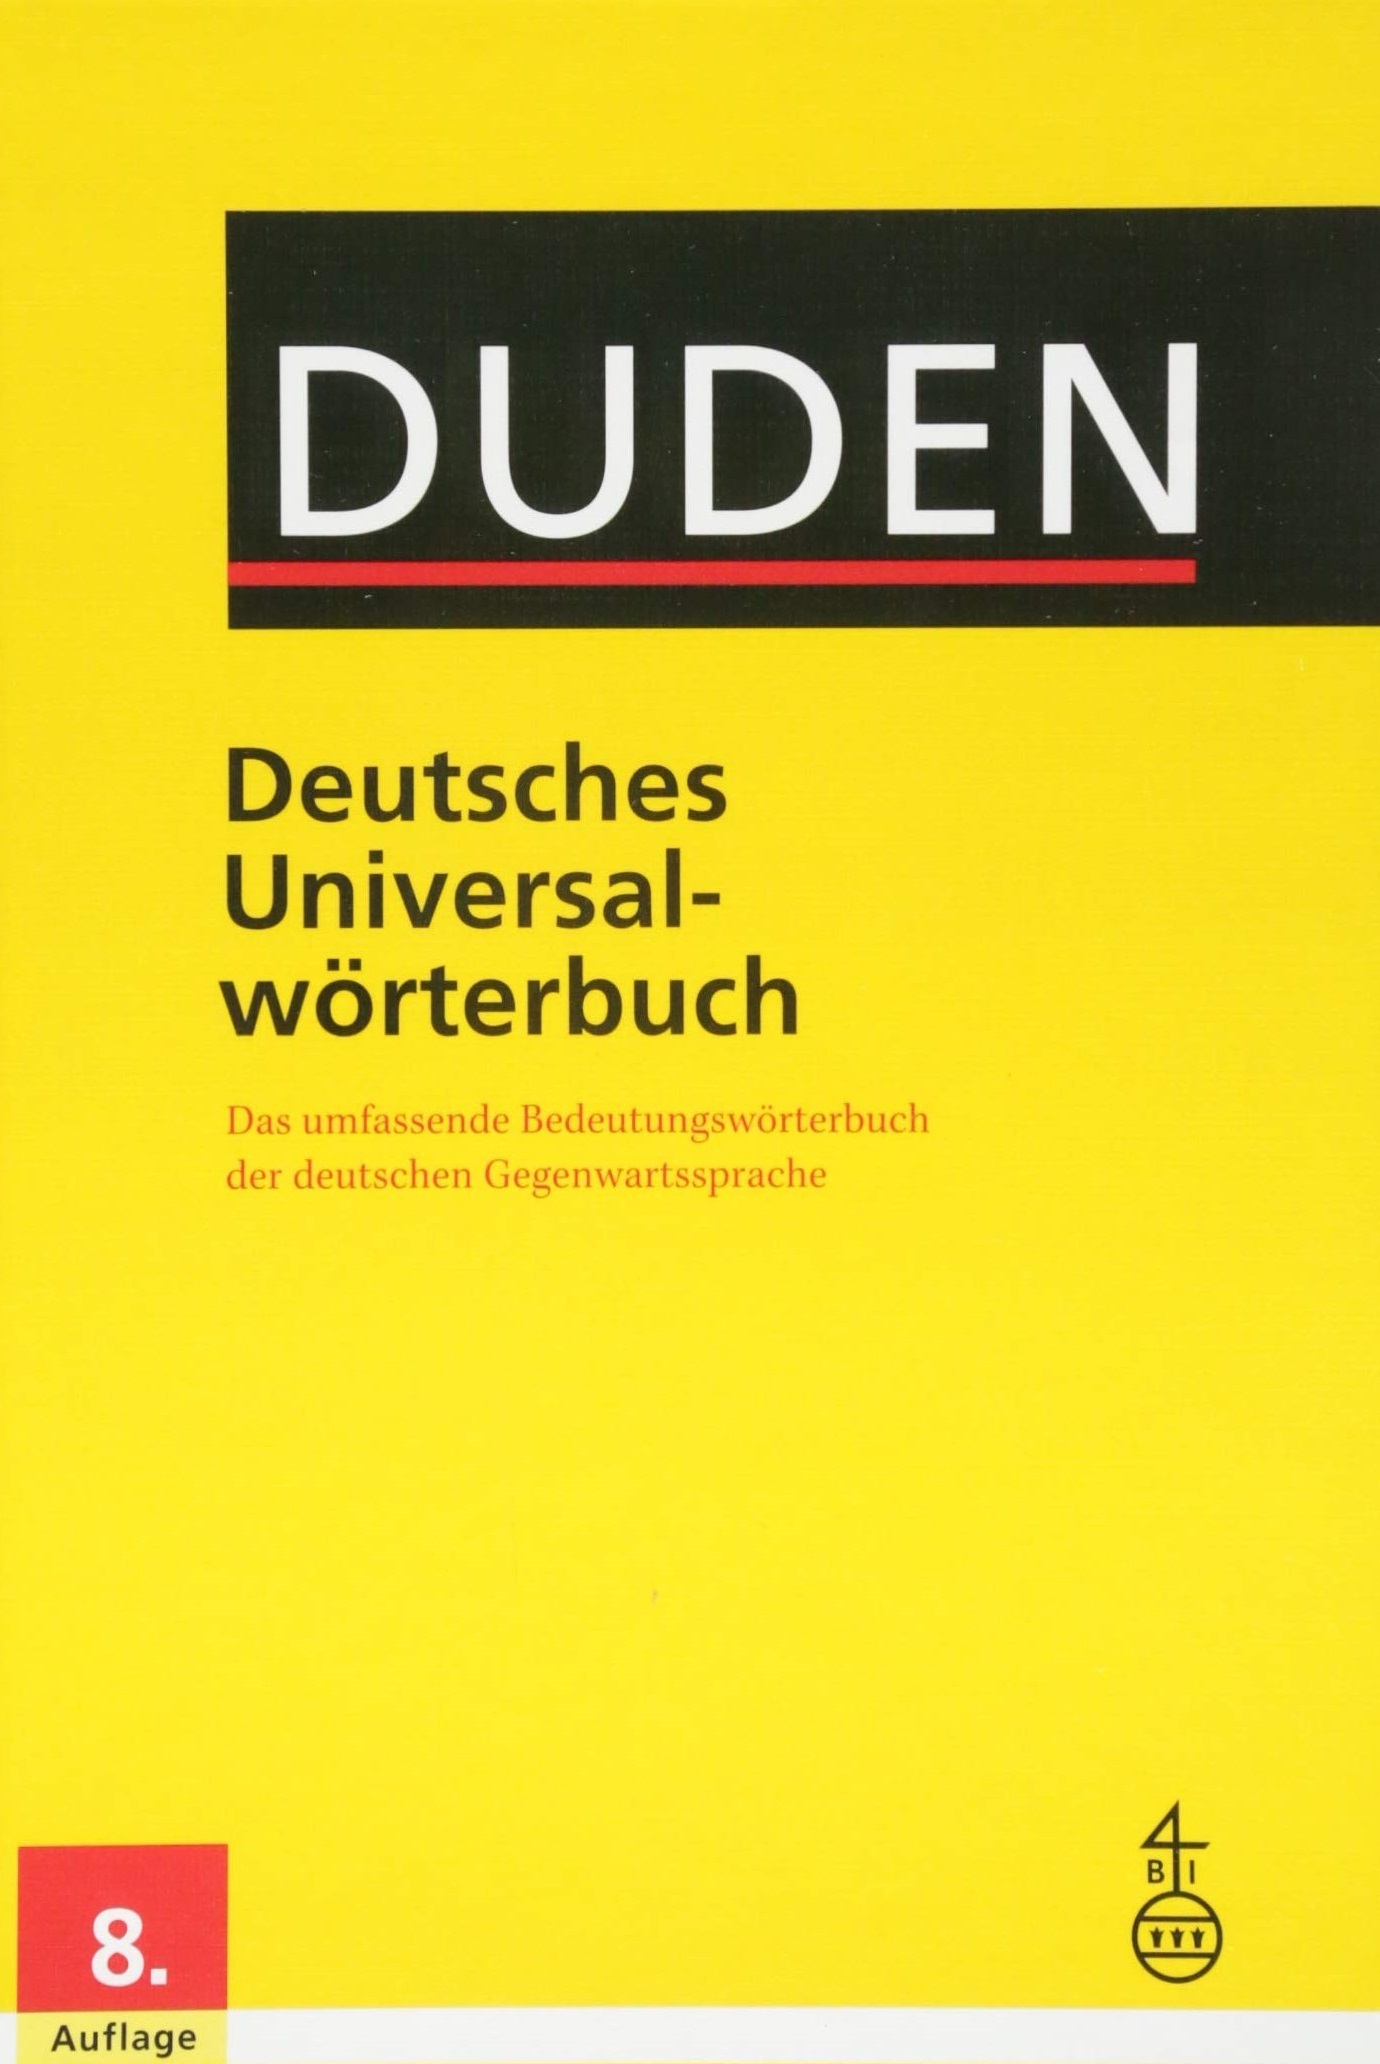 Duden. Deutsches Universalwoerterbuch (Hardcover) / Универсальный словарь немецкого языка (твердая обложка)